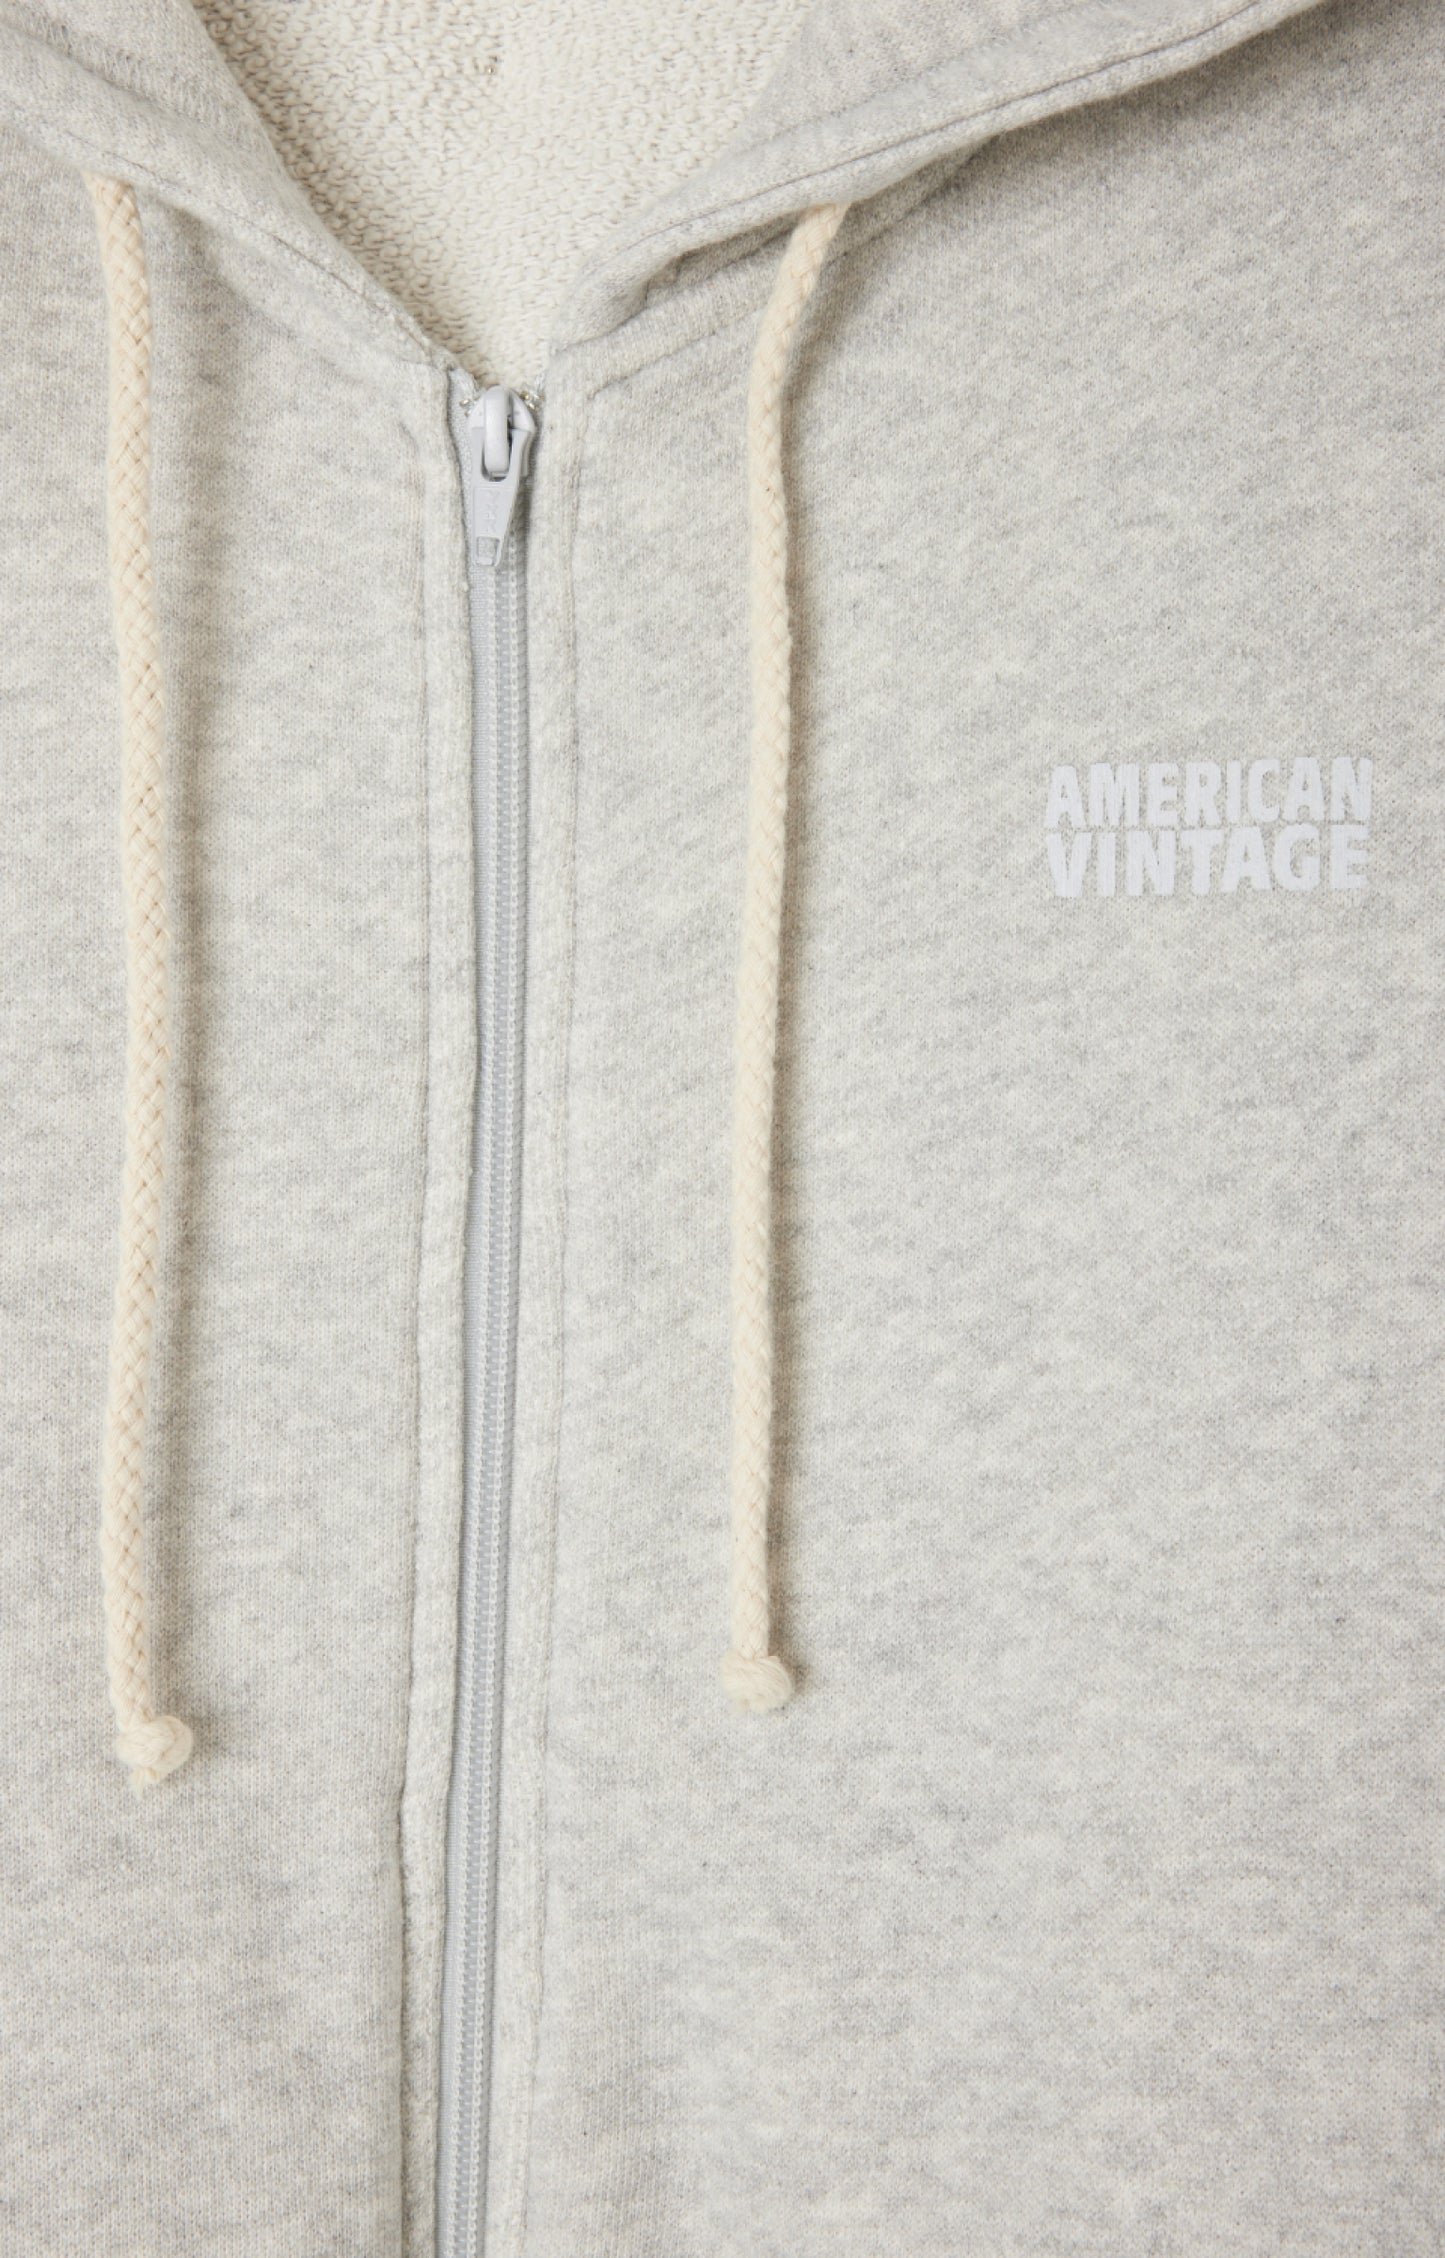 American Vintage Sweatshirt Kodytown